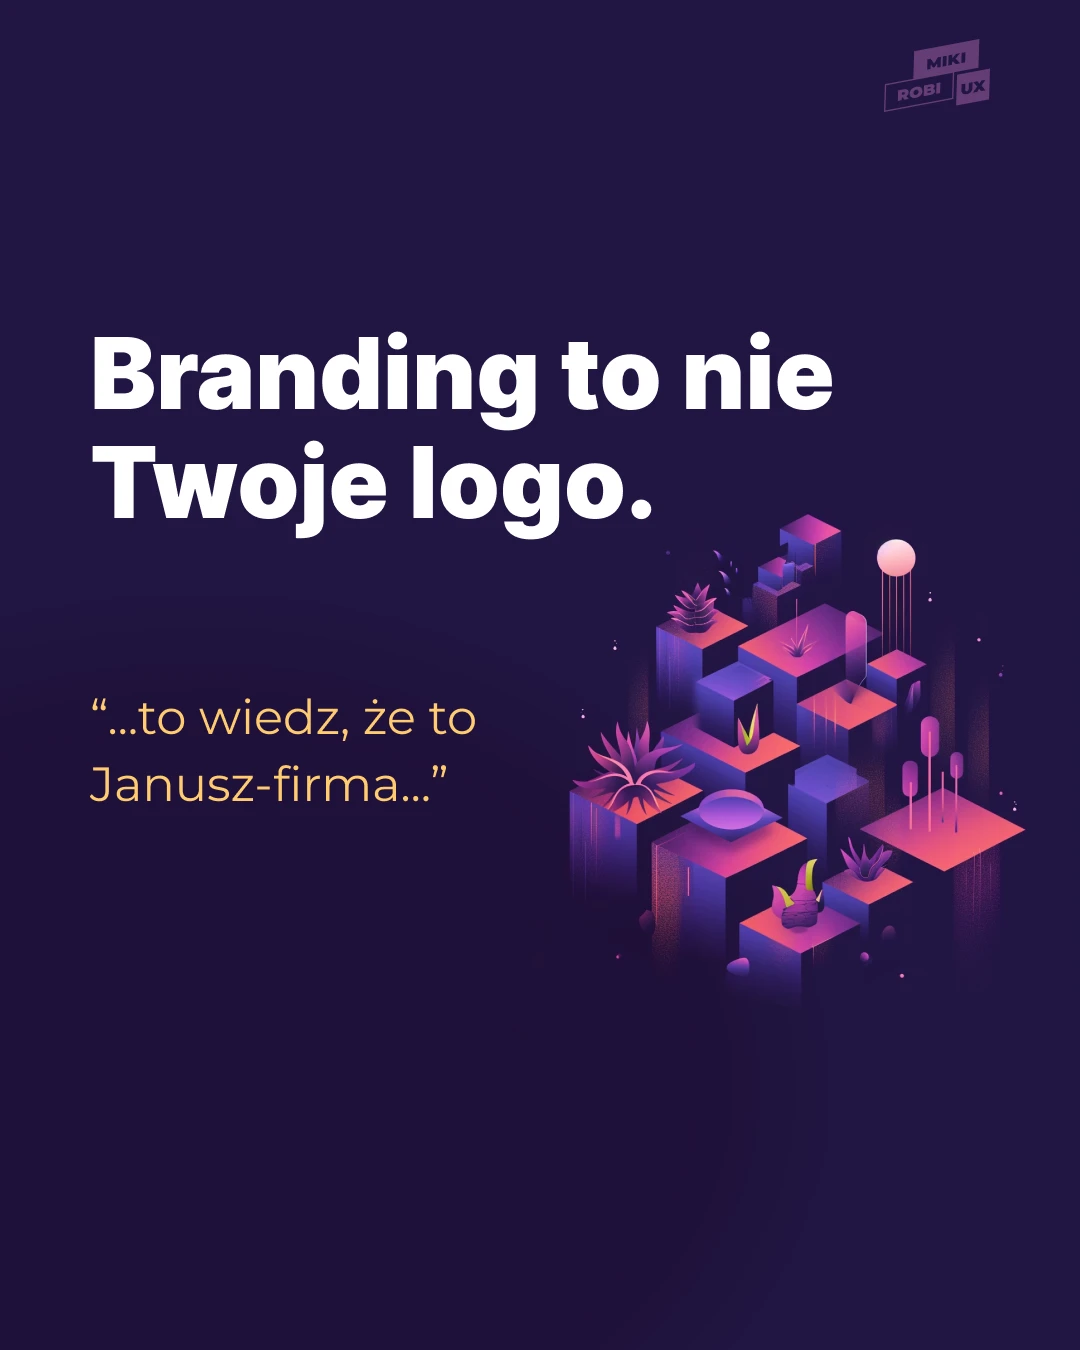 Branding to nie Twoje logo